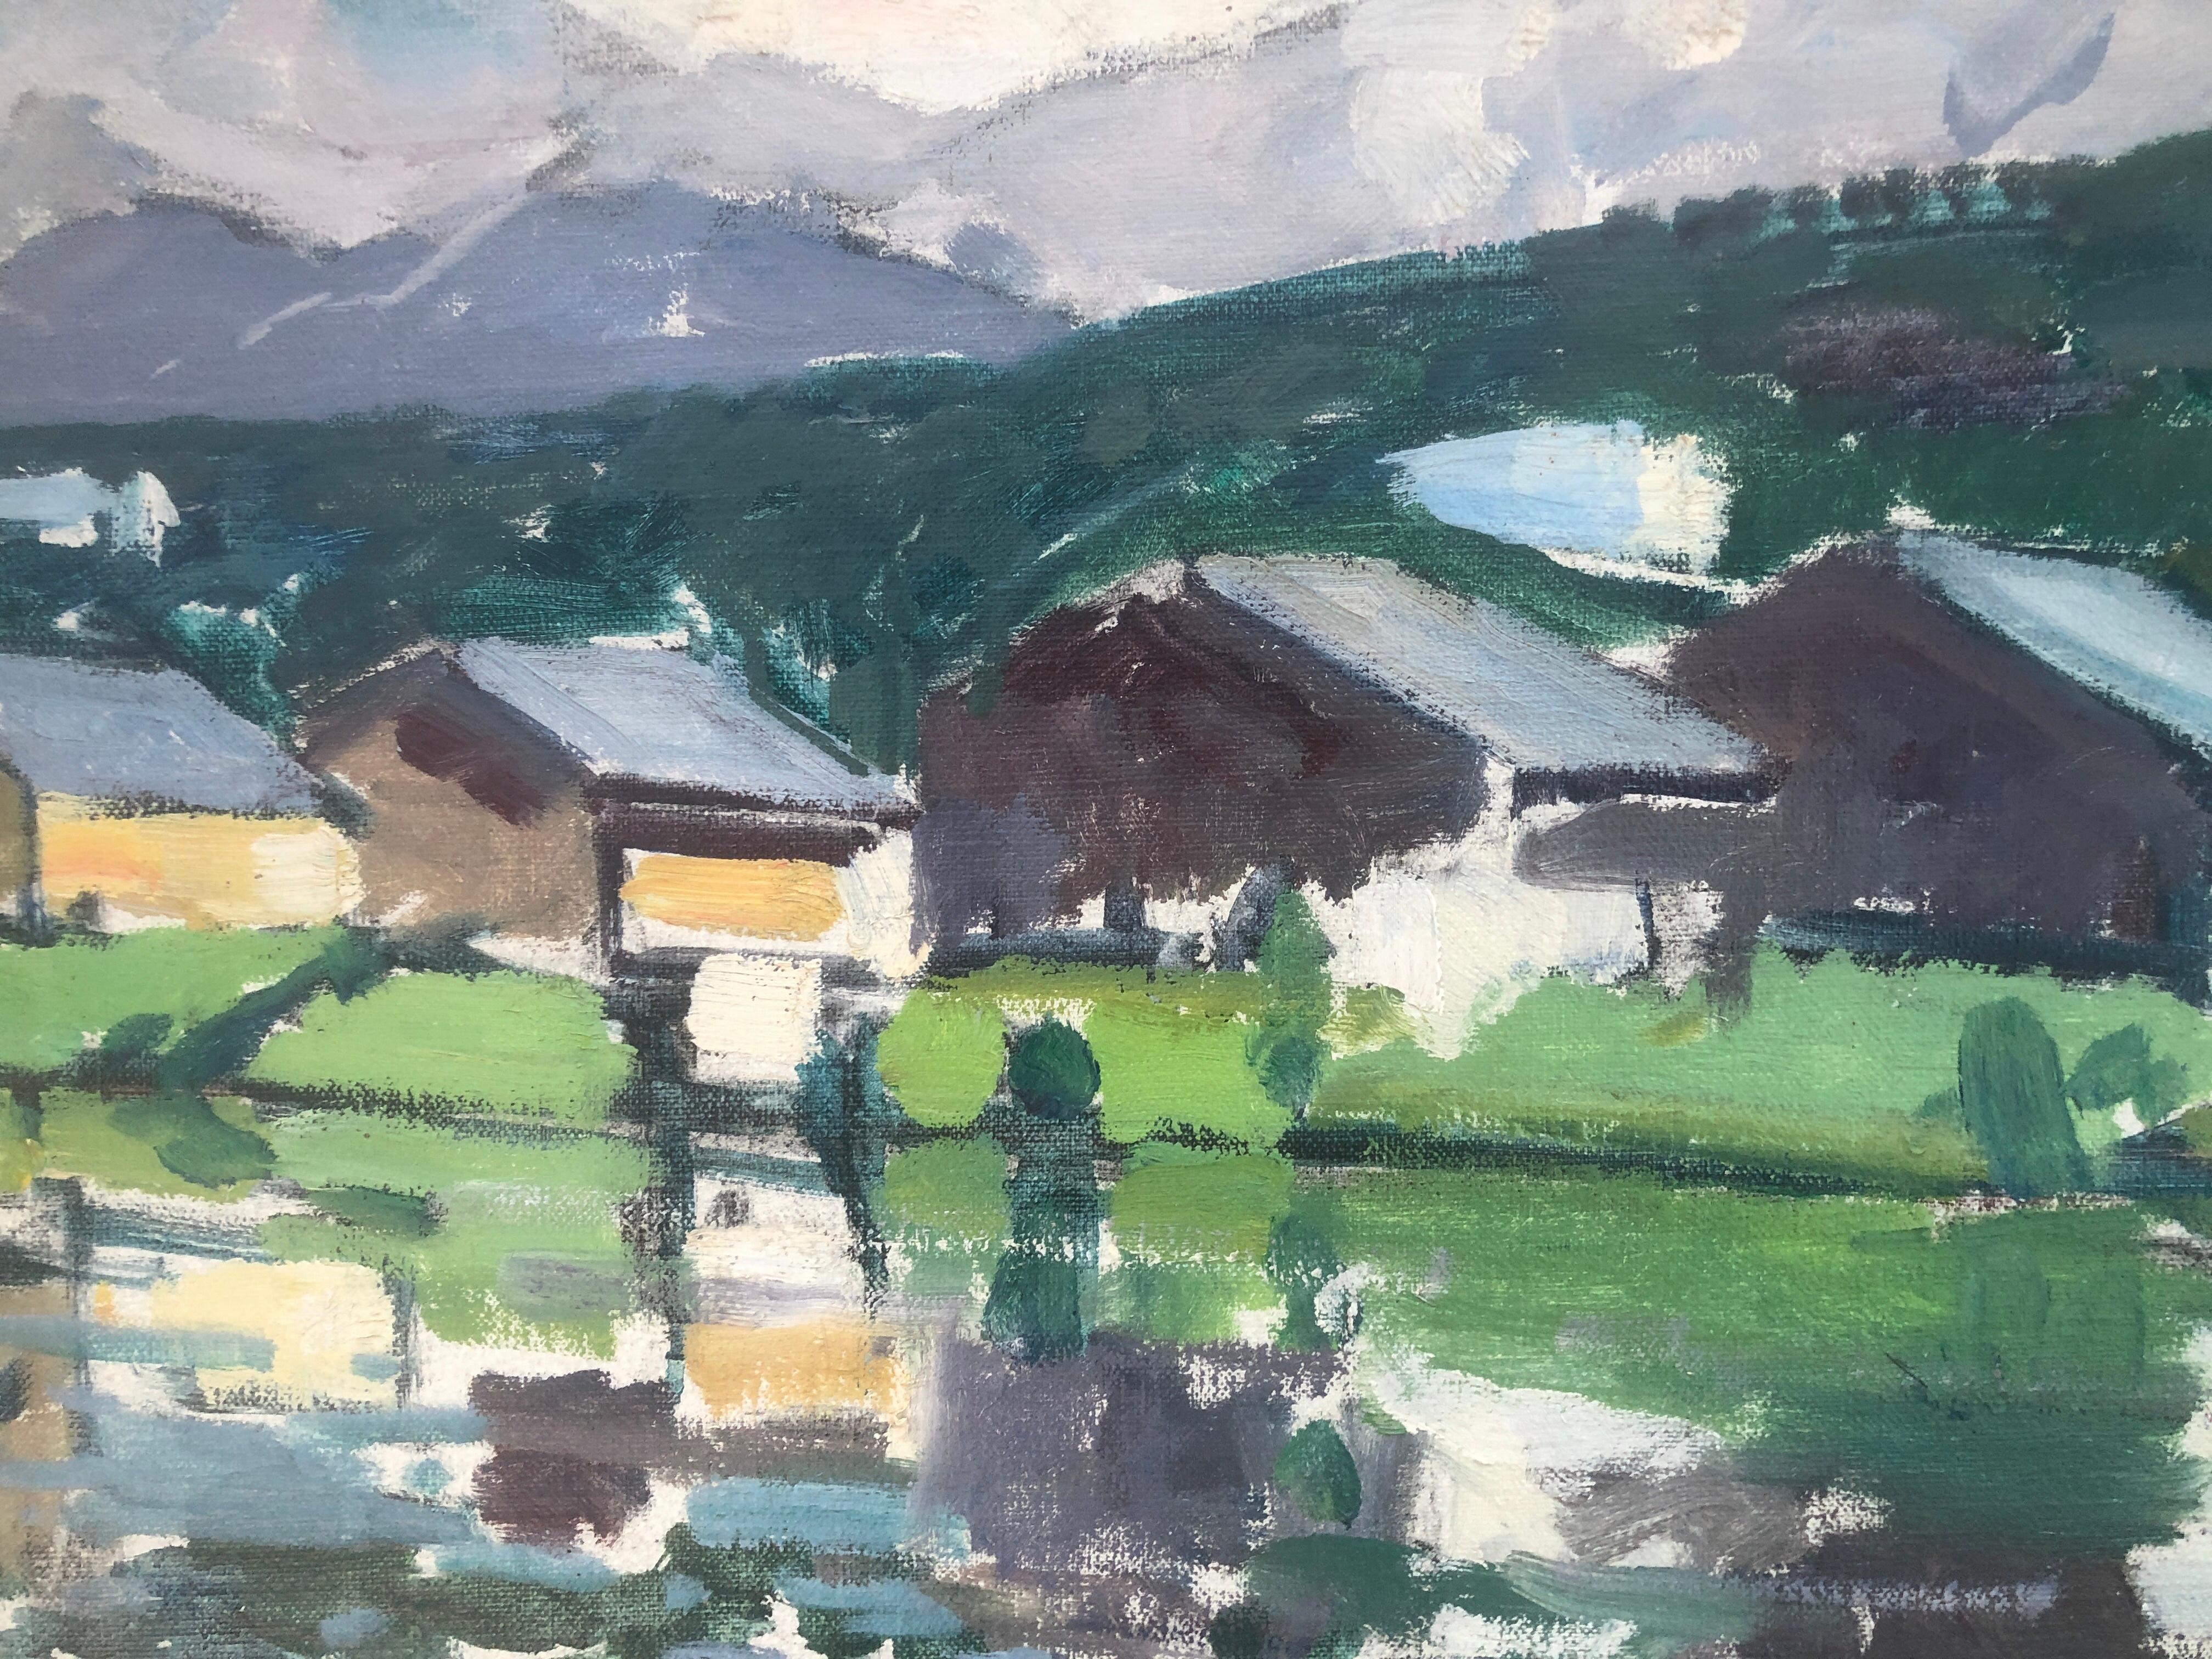 Le lac des Pyrénées, Espagne, peinture à l'huile sur toile, paysage écossais - Post-impressionnisme Painting par Rafael Duran Benet